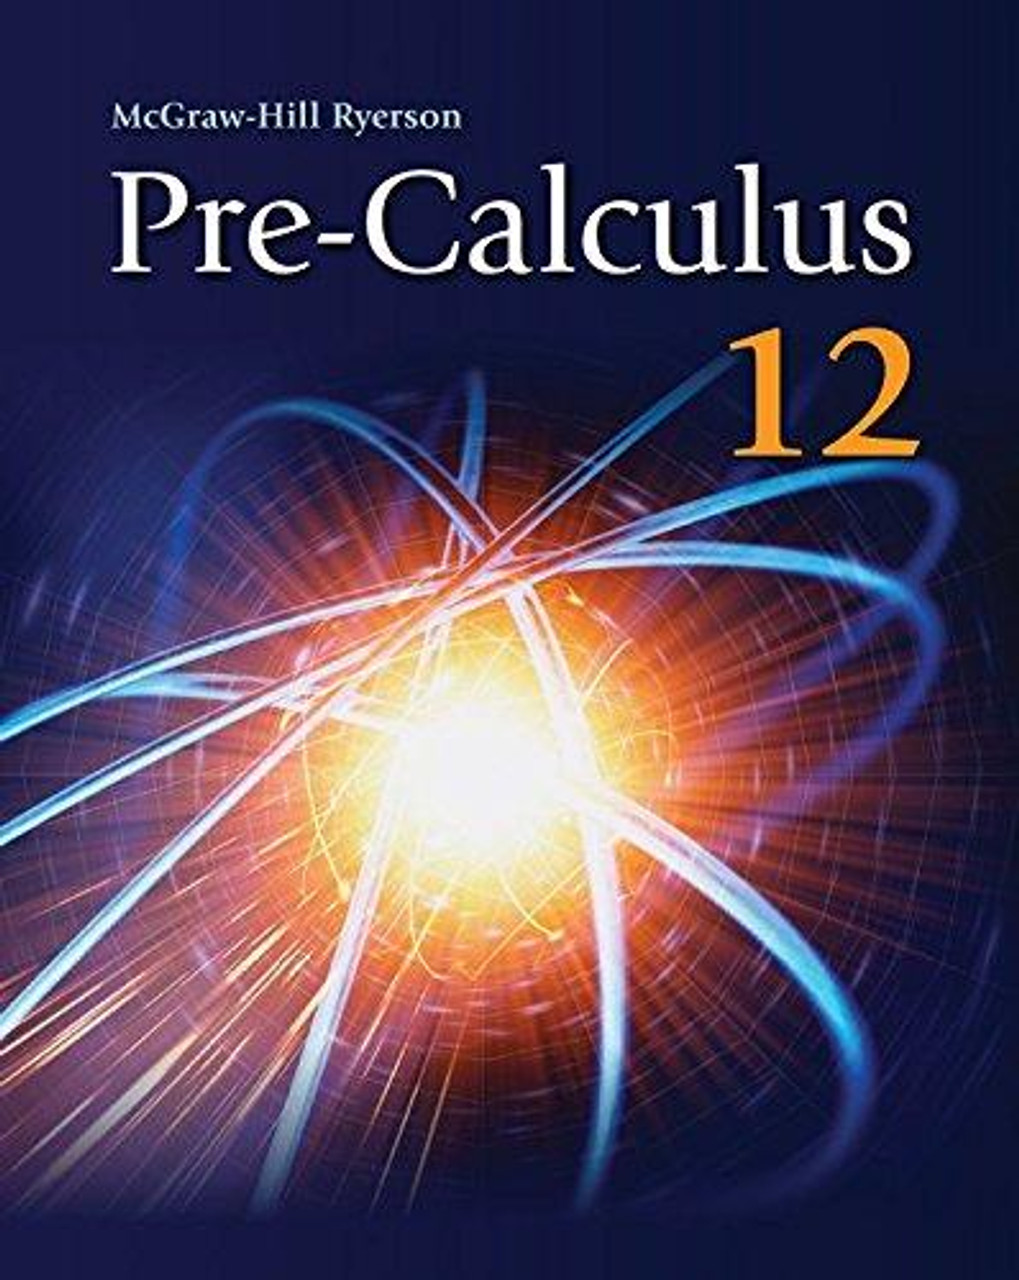 Pre-Calculus 12